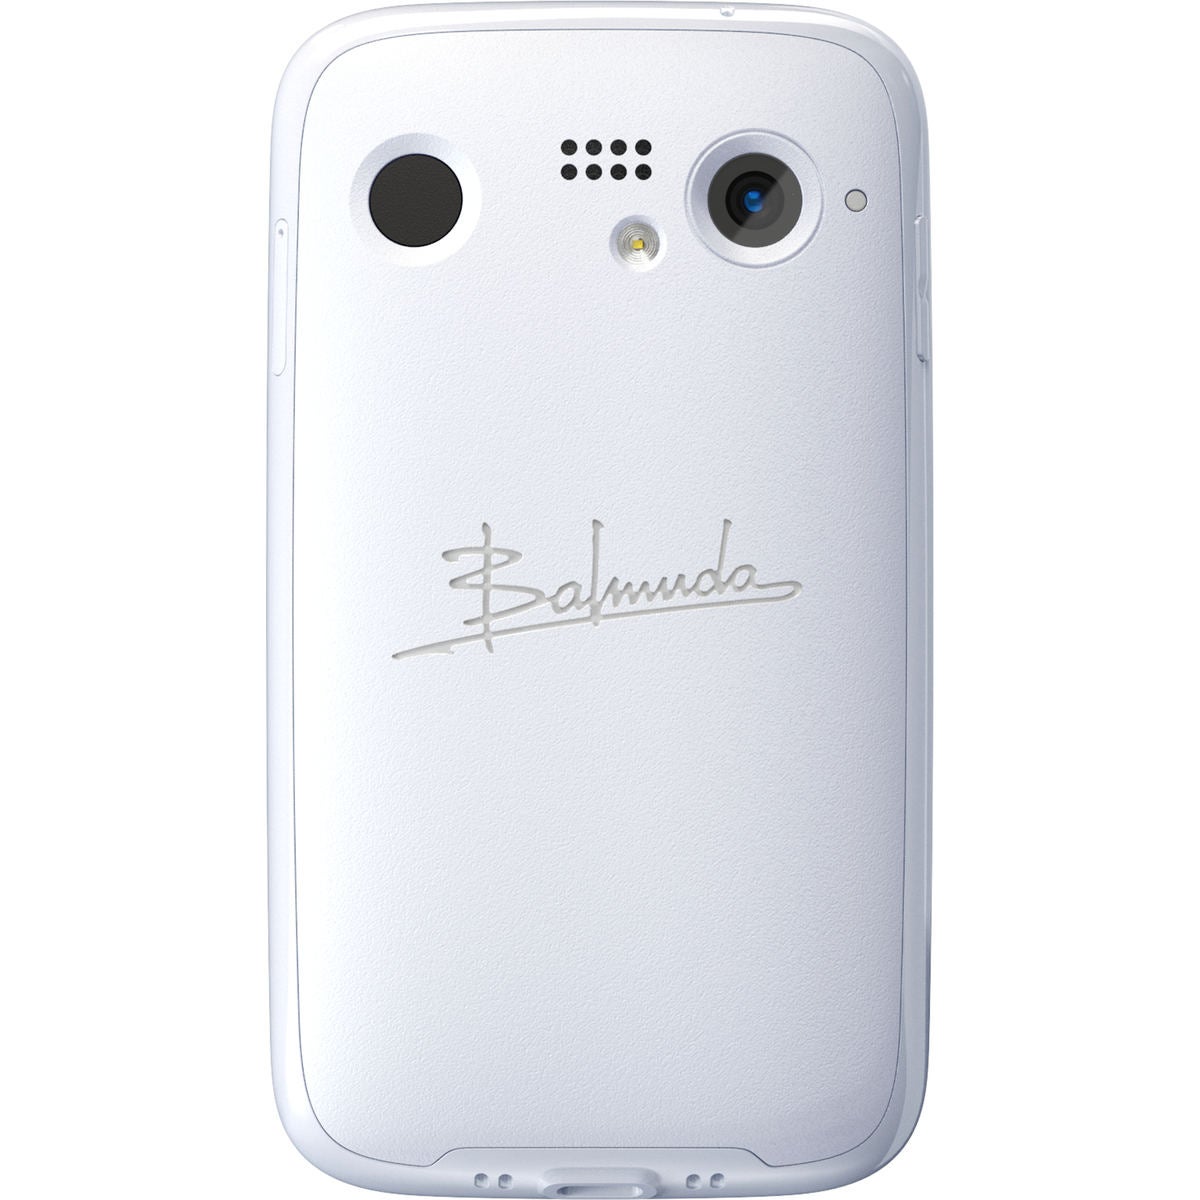 ソフトバンク、バルミューダ初のスマホ「BALMUDA Phone」を独占販売